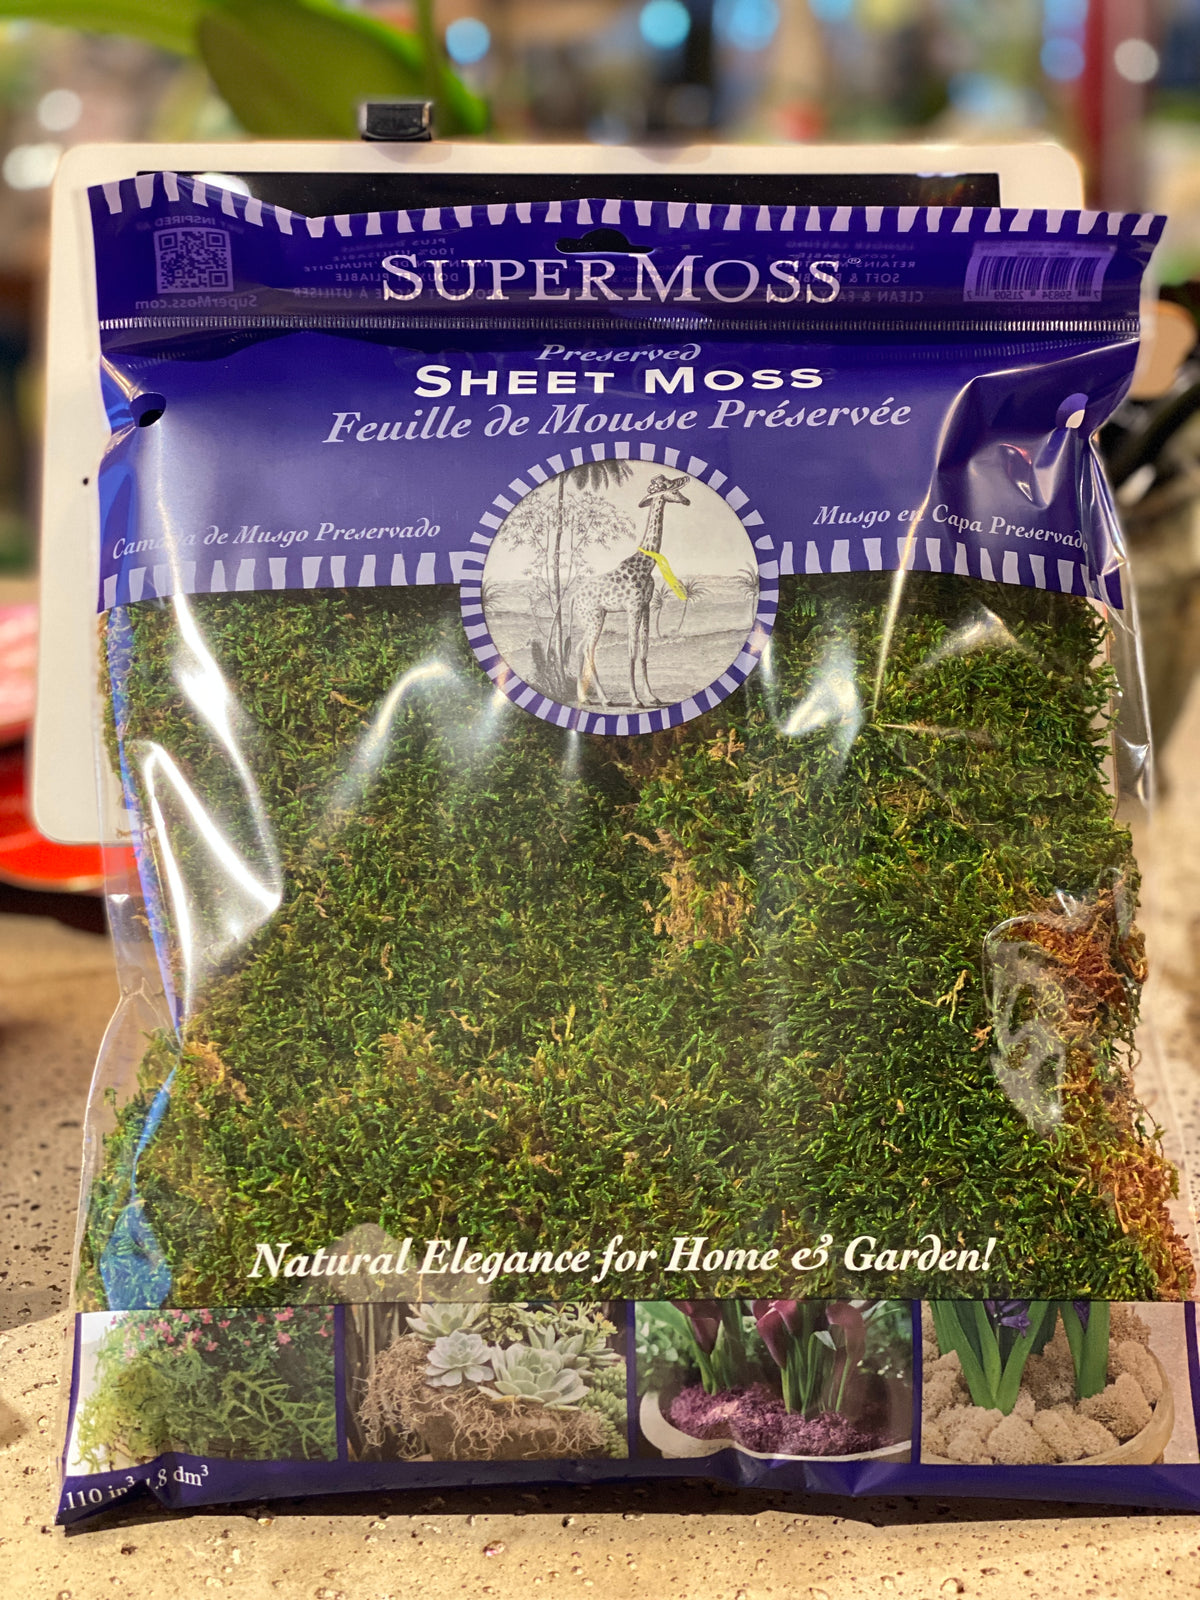 SuperMoss Preserved Sheet Moss | Michaels